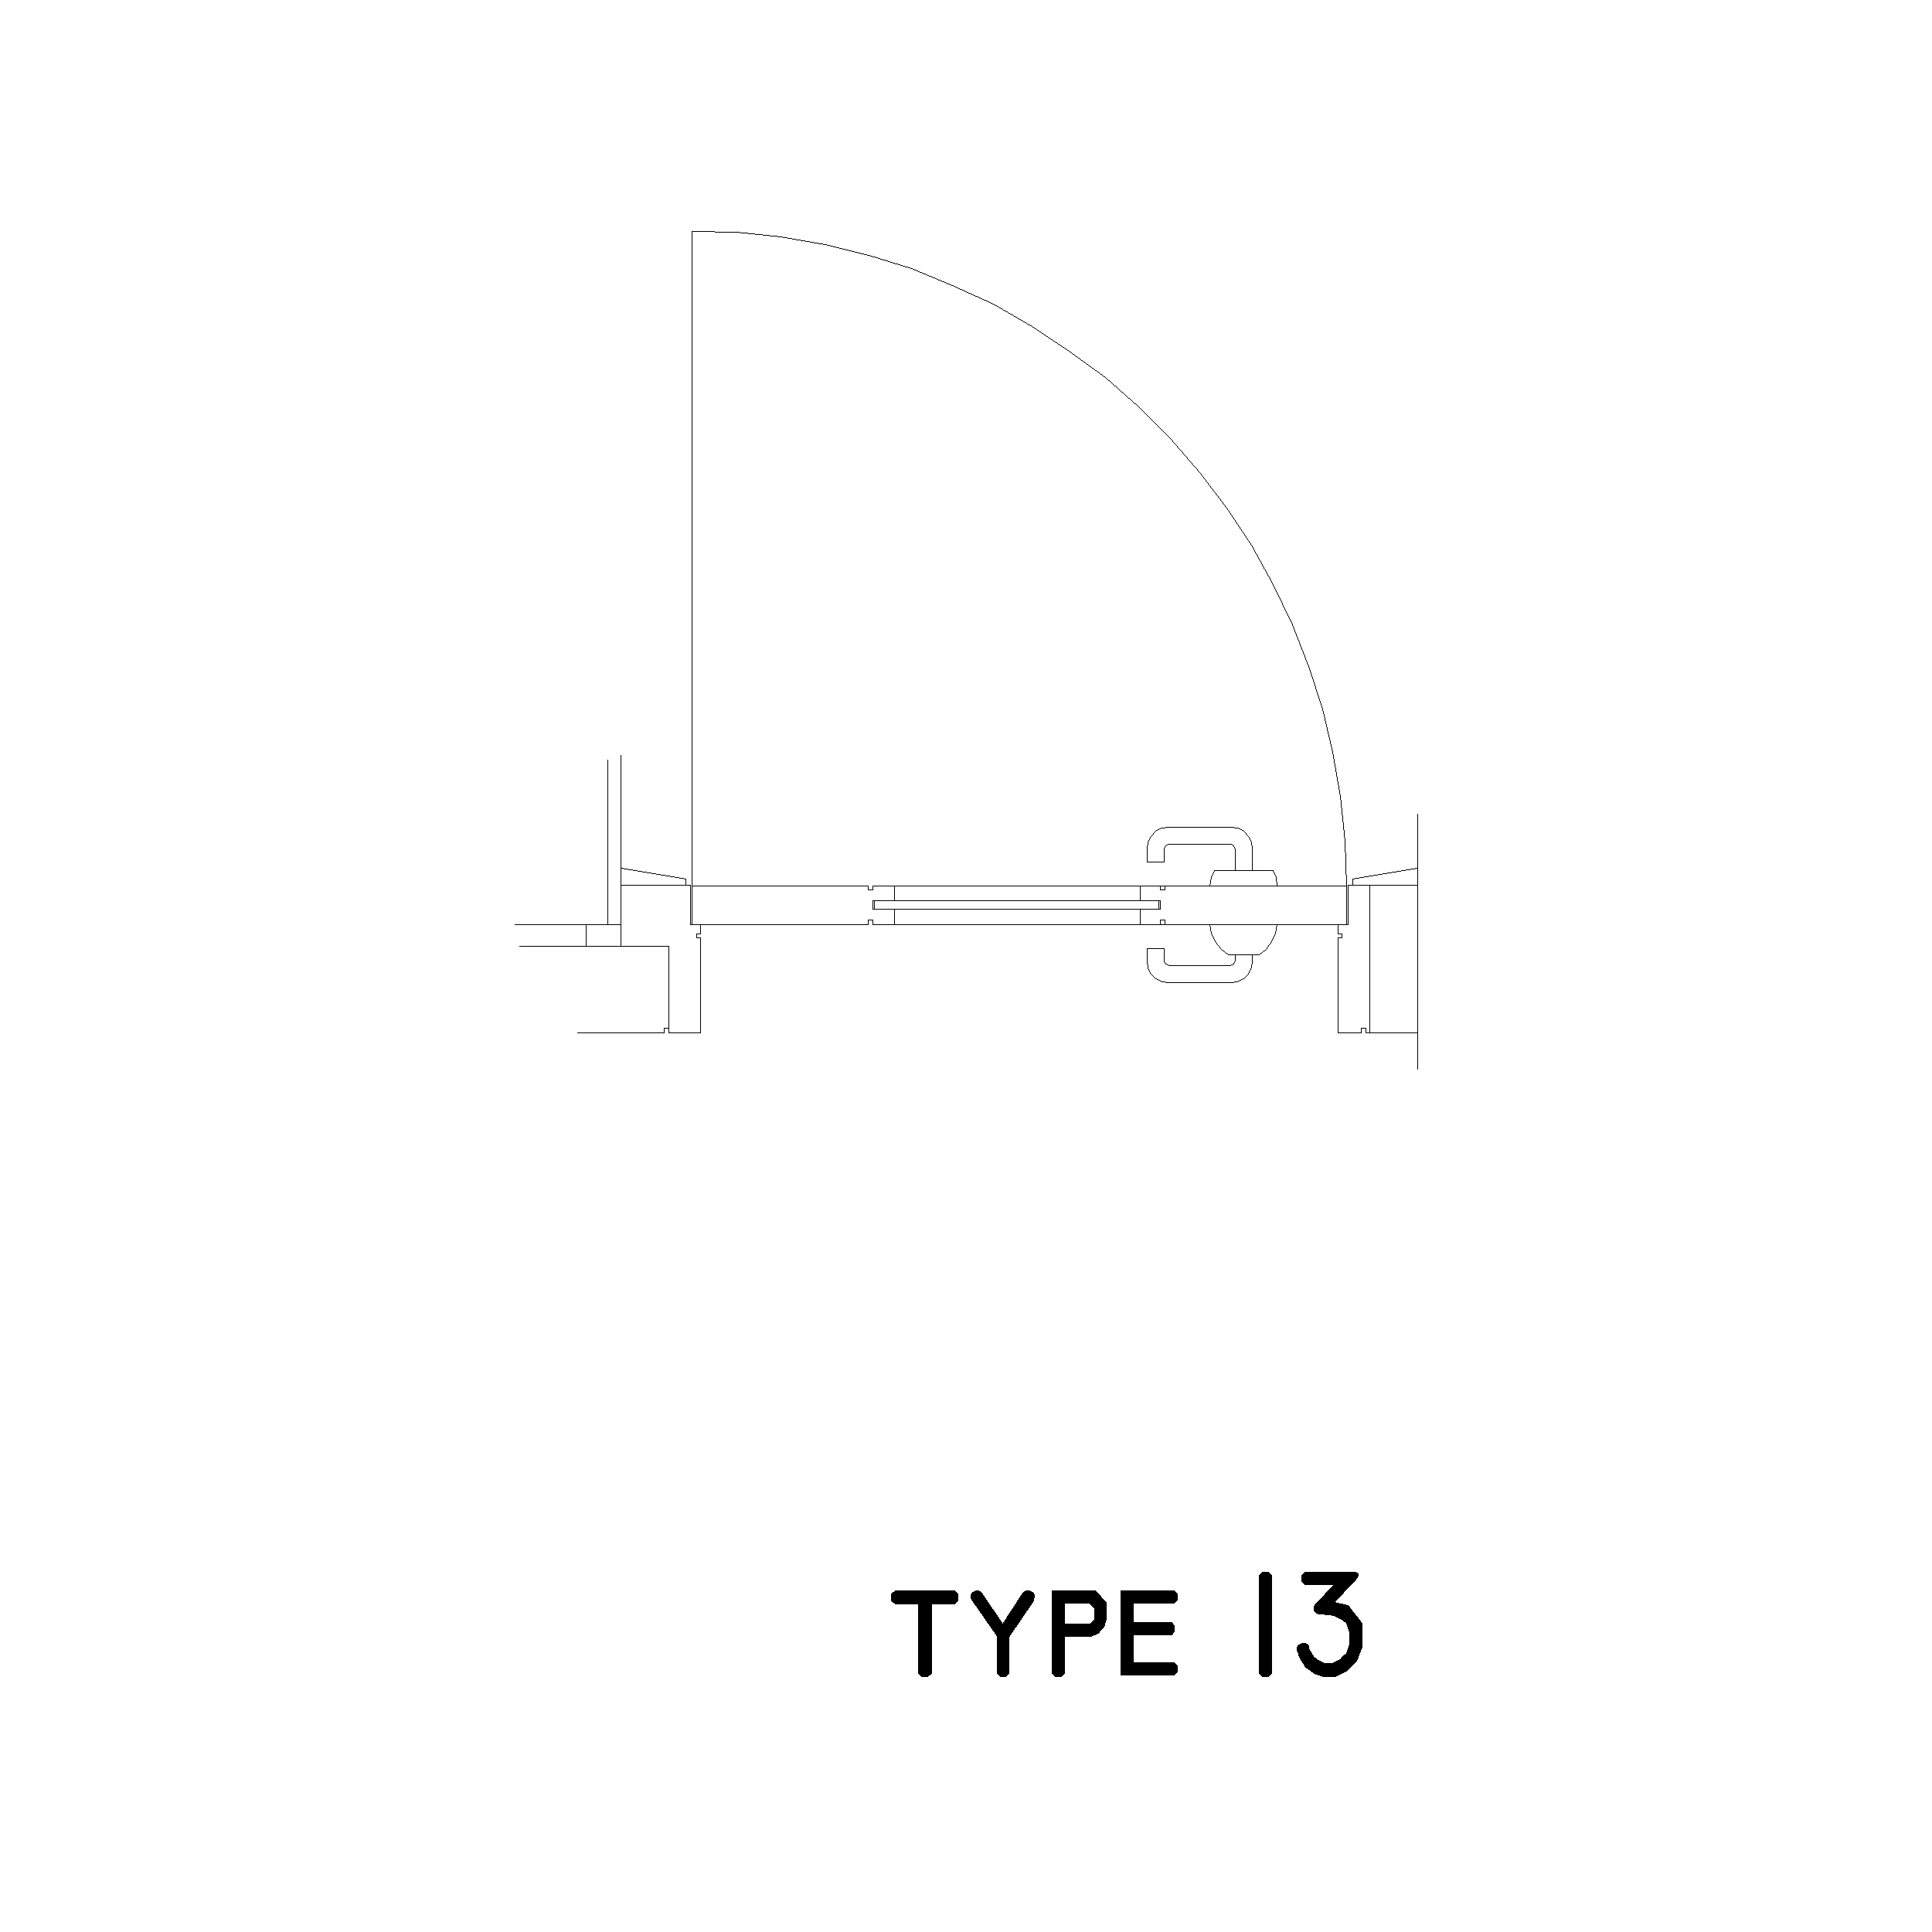 Type 13 Door Plan: 2D Top View Plan - Cadblockdwg